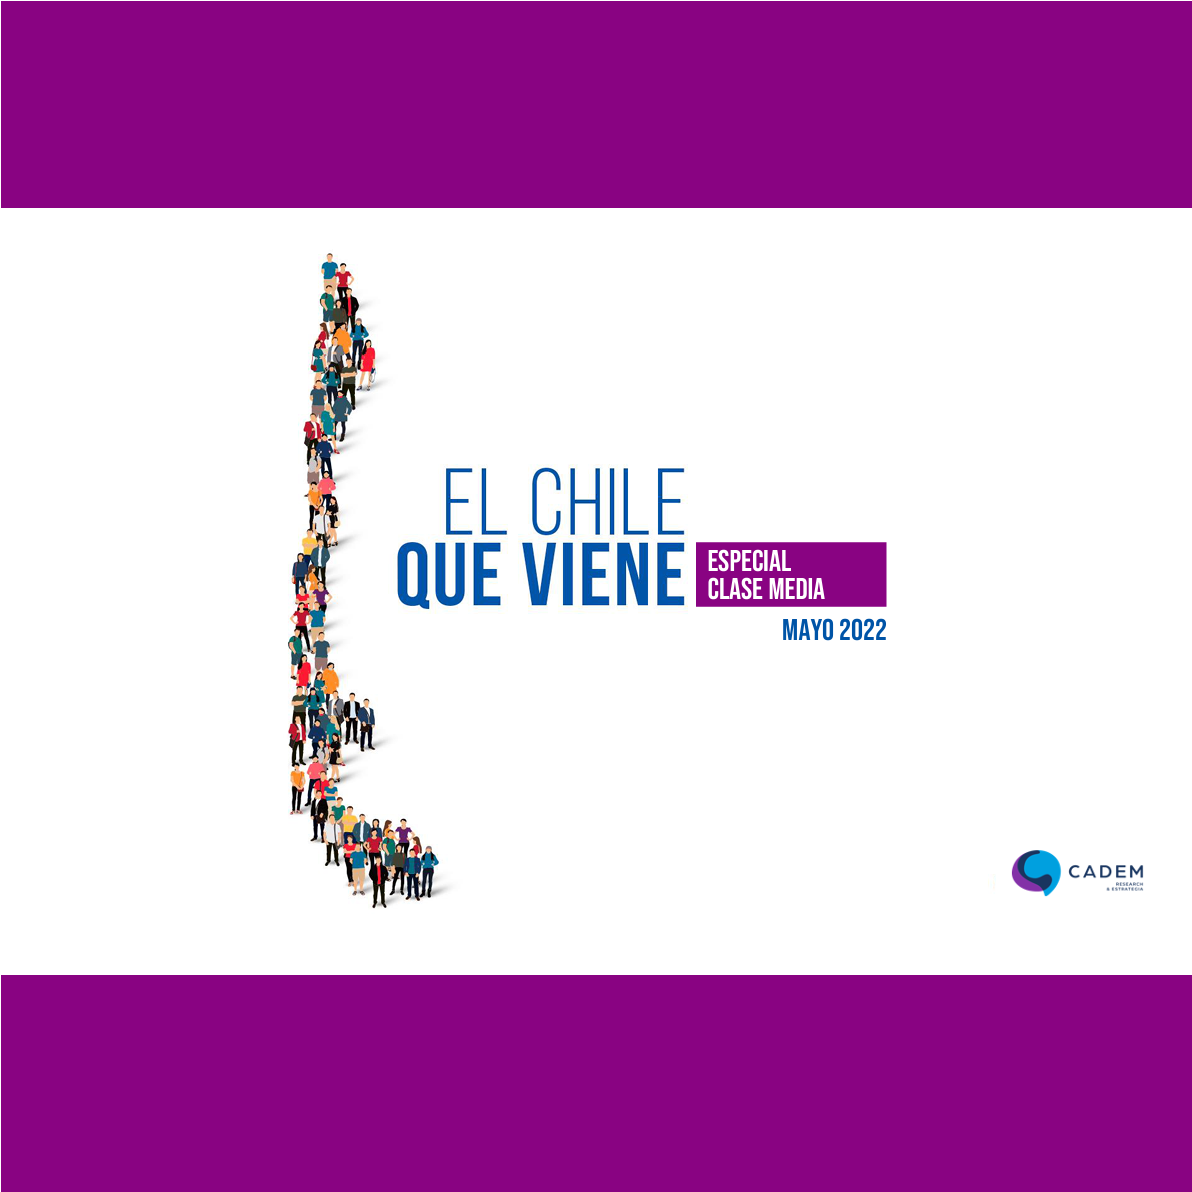 Estudio: El Chile que viene – Especial clase media